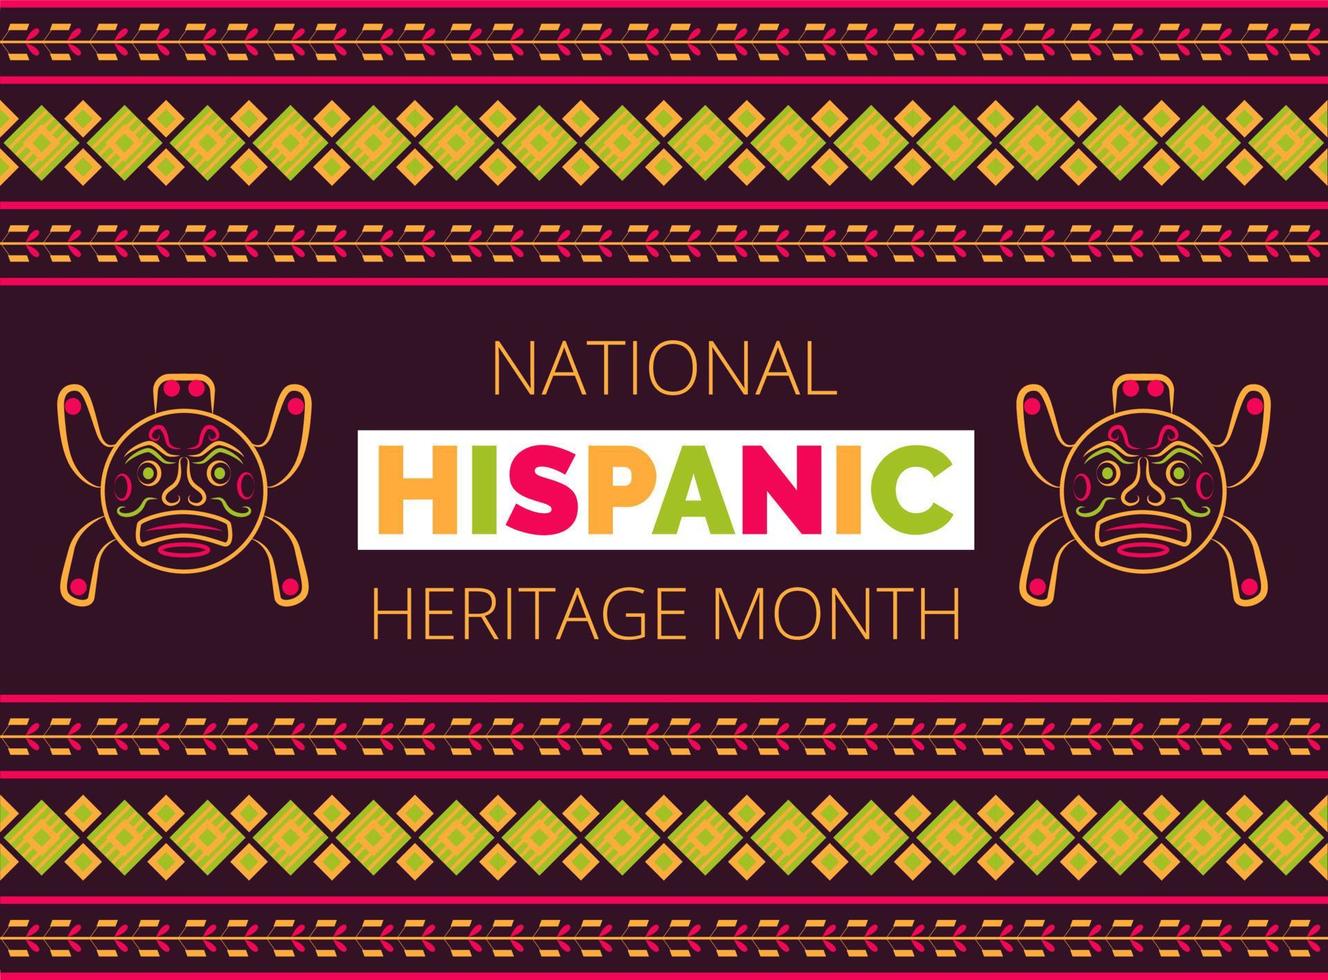 National Hispanic Heritage month firas från 15 september till 15 oktober usa. latino amerikansk poncho prydnad vektor för gratulationskort, banderoll, affisch